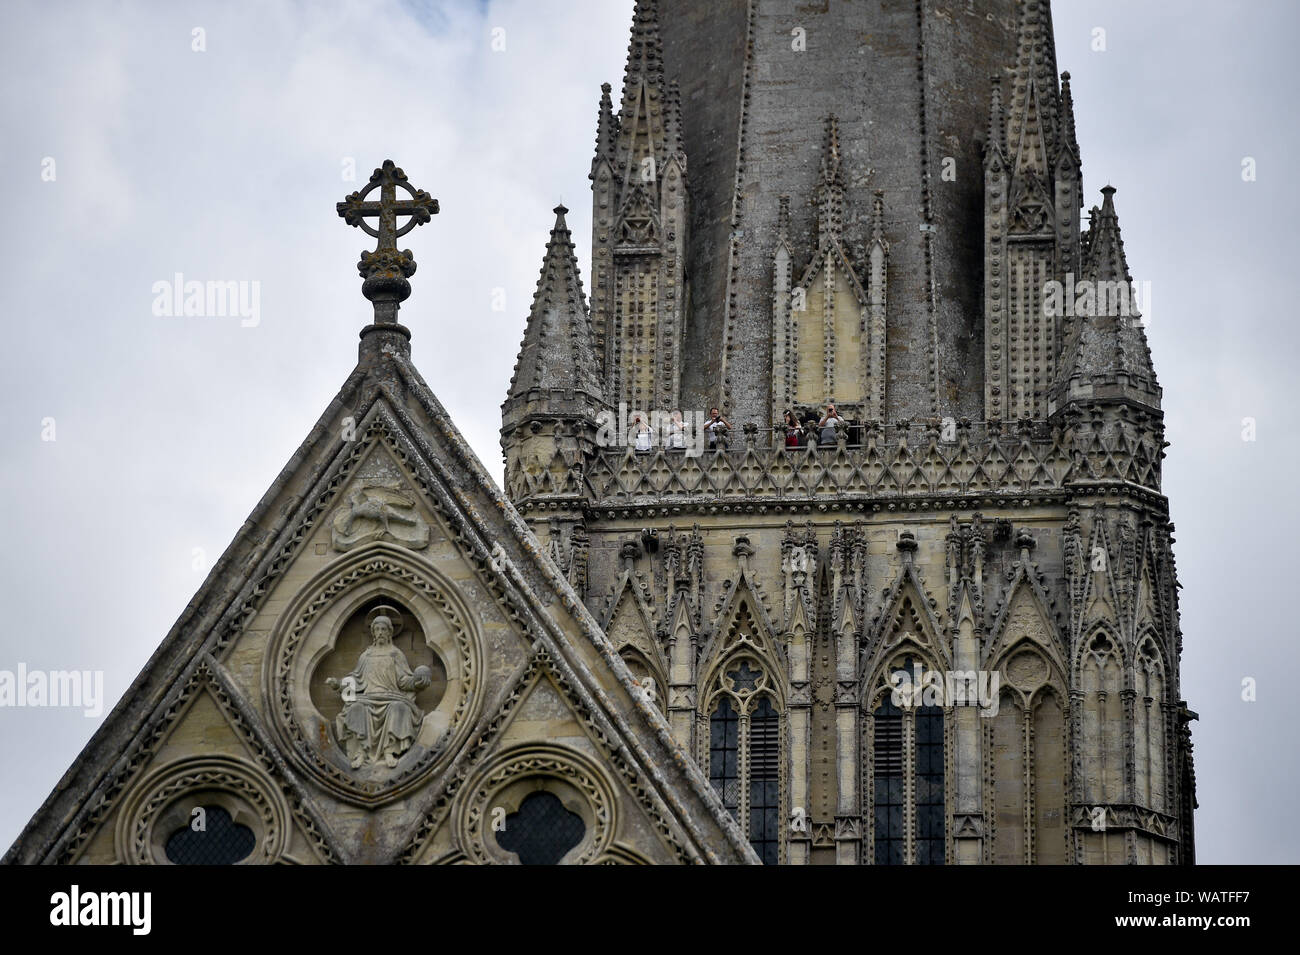 La gente en el oeste balcón mirar a Salisbury durante la visita de la torre de la Catedral de Salisbury, donde los visitantes son guiados hasta la base de los 123 metros de altura, la escalada spire 332 principalmente espiral medidas, a través del techo abovedado, espacio, pasado medieval a través de las vidrieras y el funcionamiento interno de la catedral del siglo 13. Foto de stock